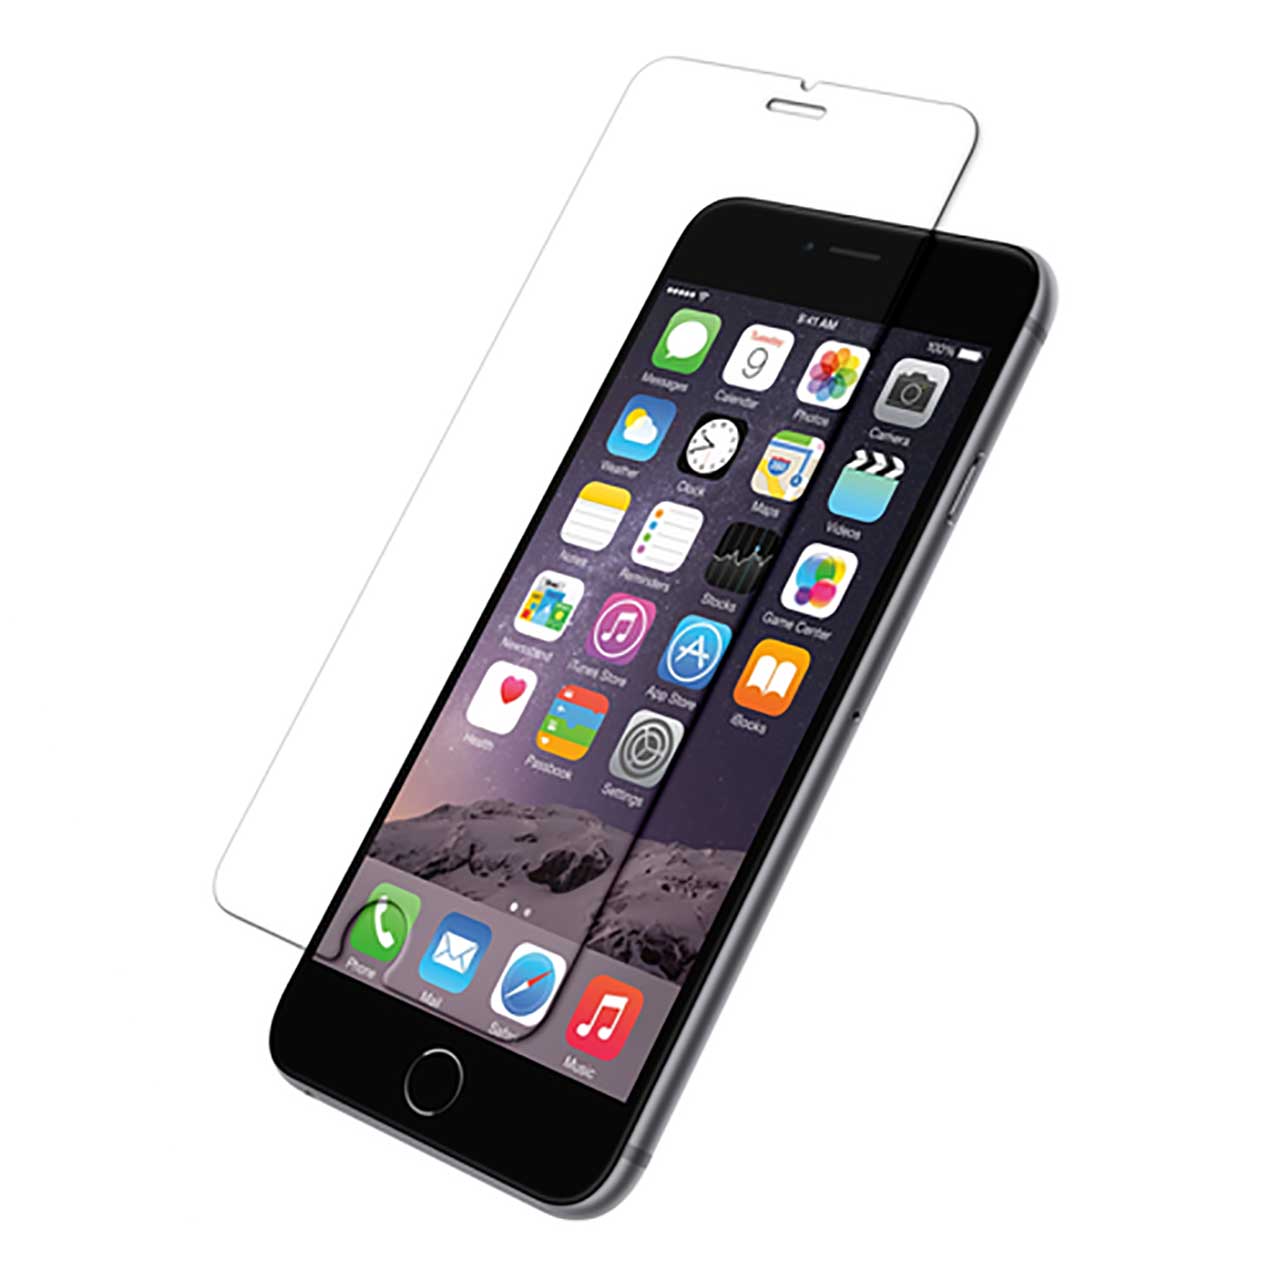 محافظ صفحه نمایش پورو مدل ilsalvadisplay مناسب برای گوشی موبایل اپل iPhone 6/6s